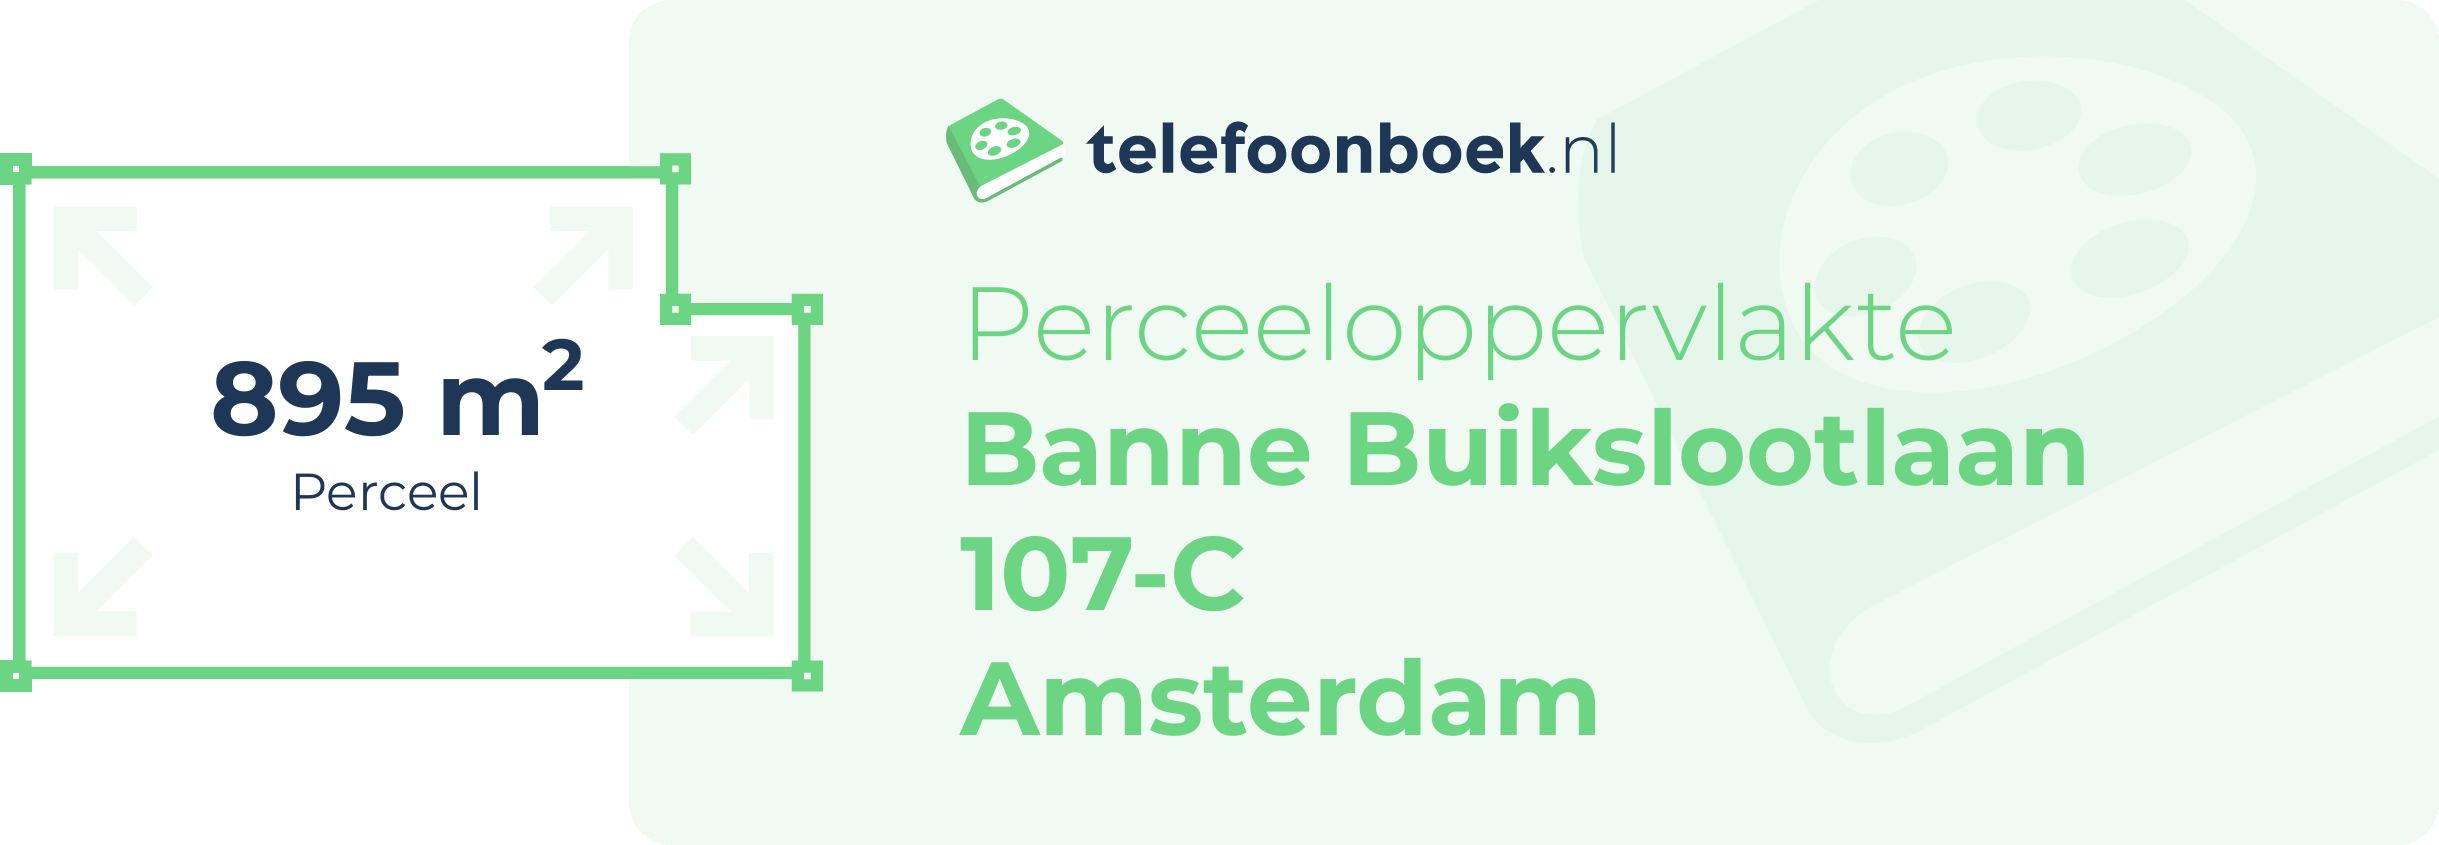 Perceeloppervlakte Banne Buikslootlaan 107-C Amsterdam